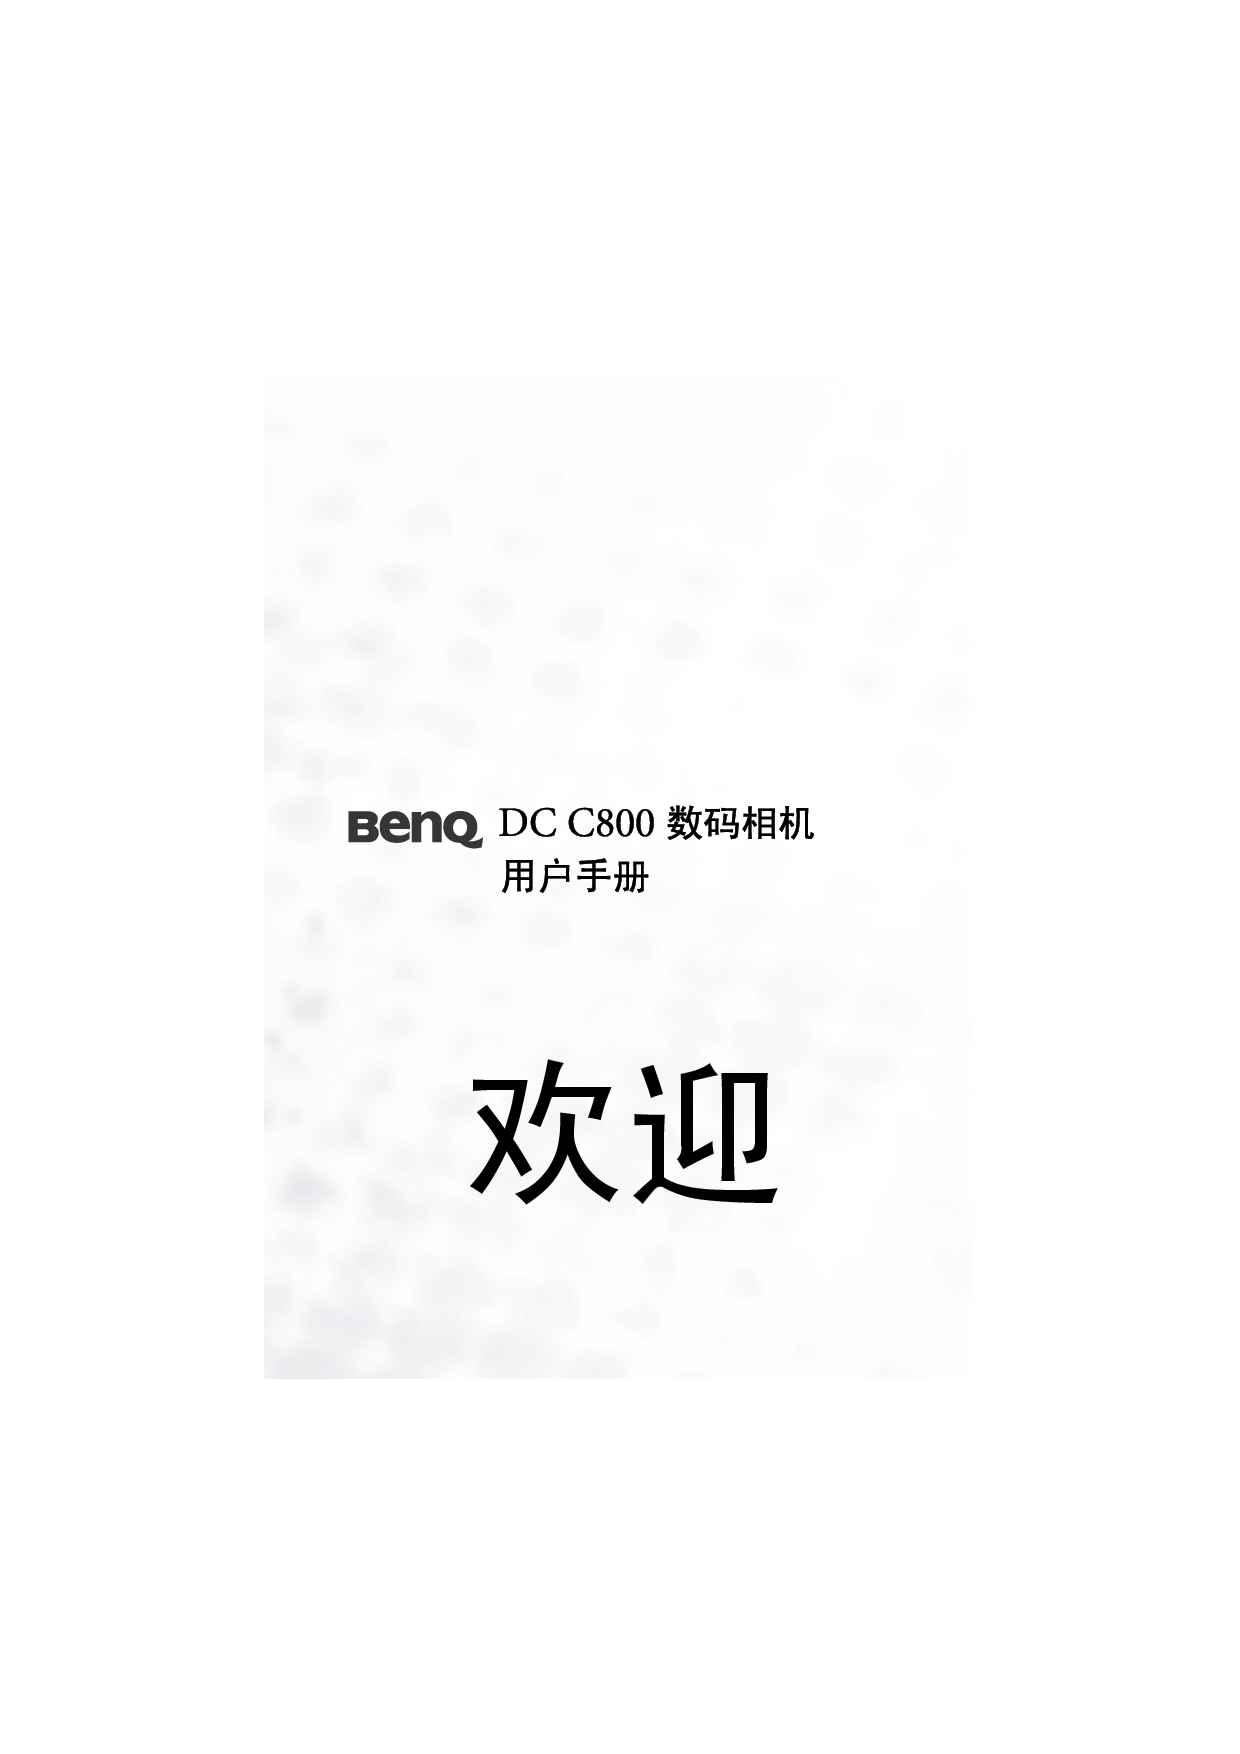 明基 Benq DC-C800 使用手册 封面